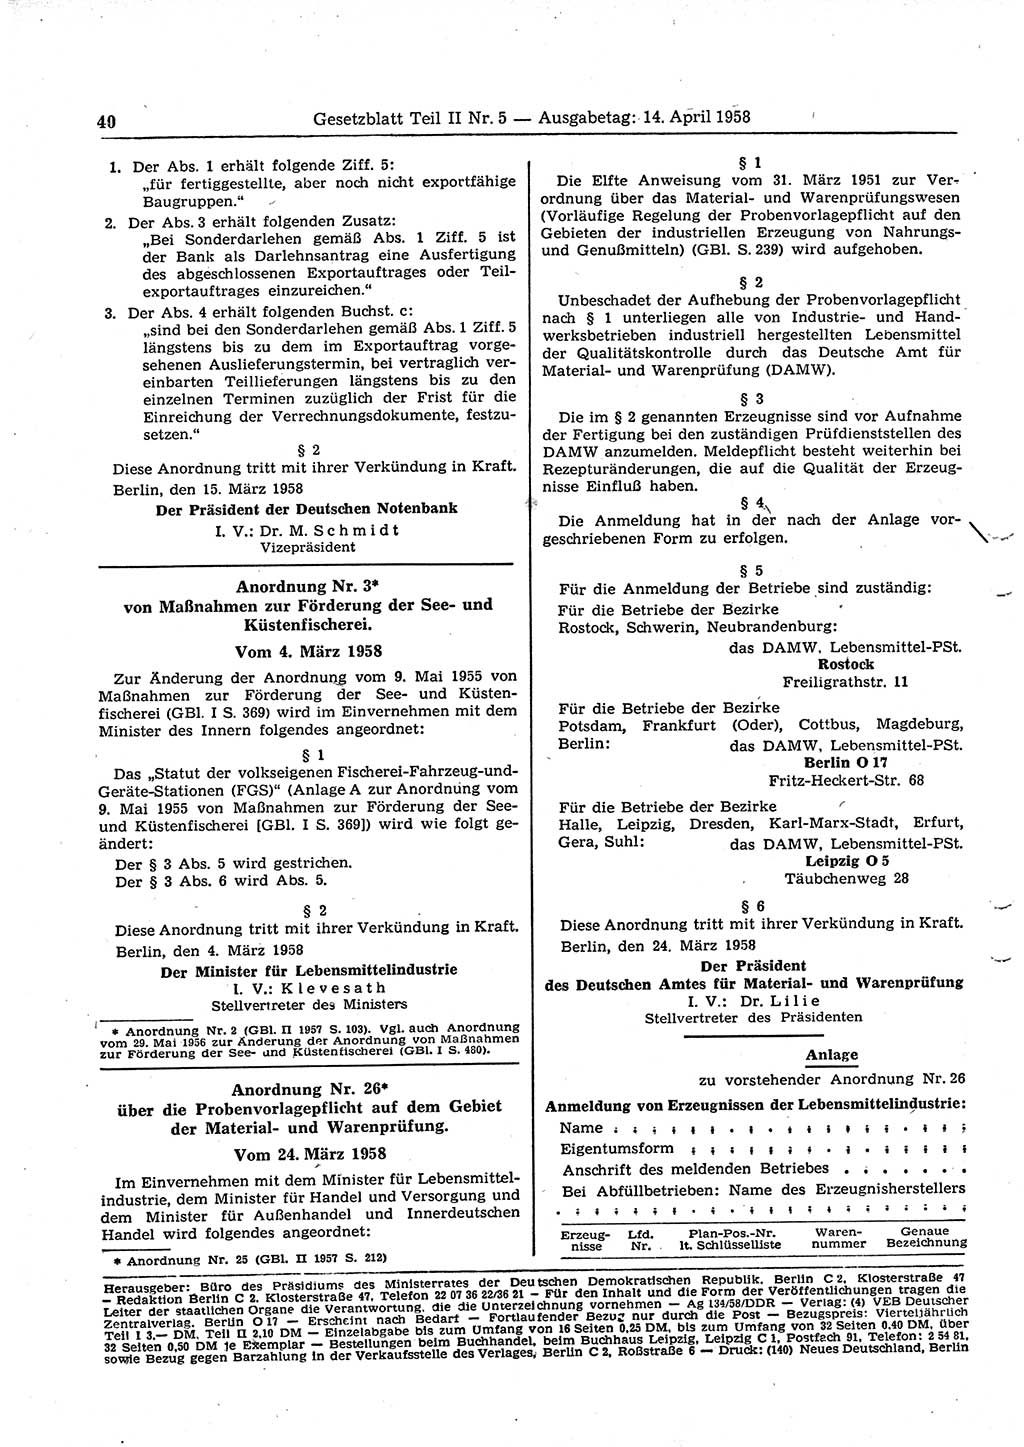 Gesetzblatt (GBl.) der Deutschen Demokratischen Republik (DDR) Teil ⅠⅠ 1958, Seite 40 (GBl. DDR ⅠⅠ 1958, S. 40)